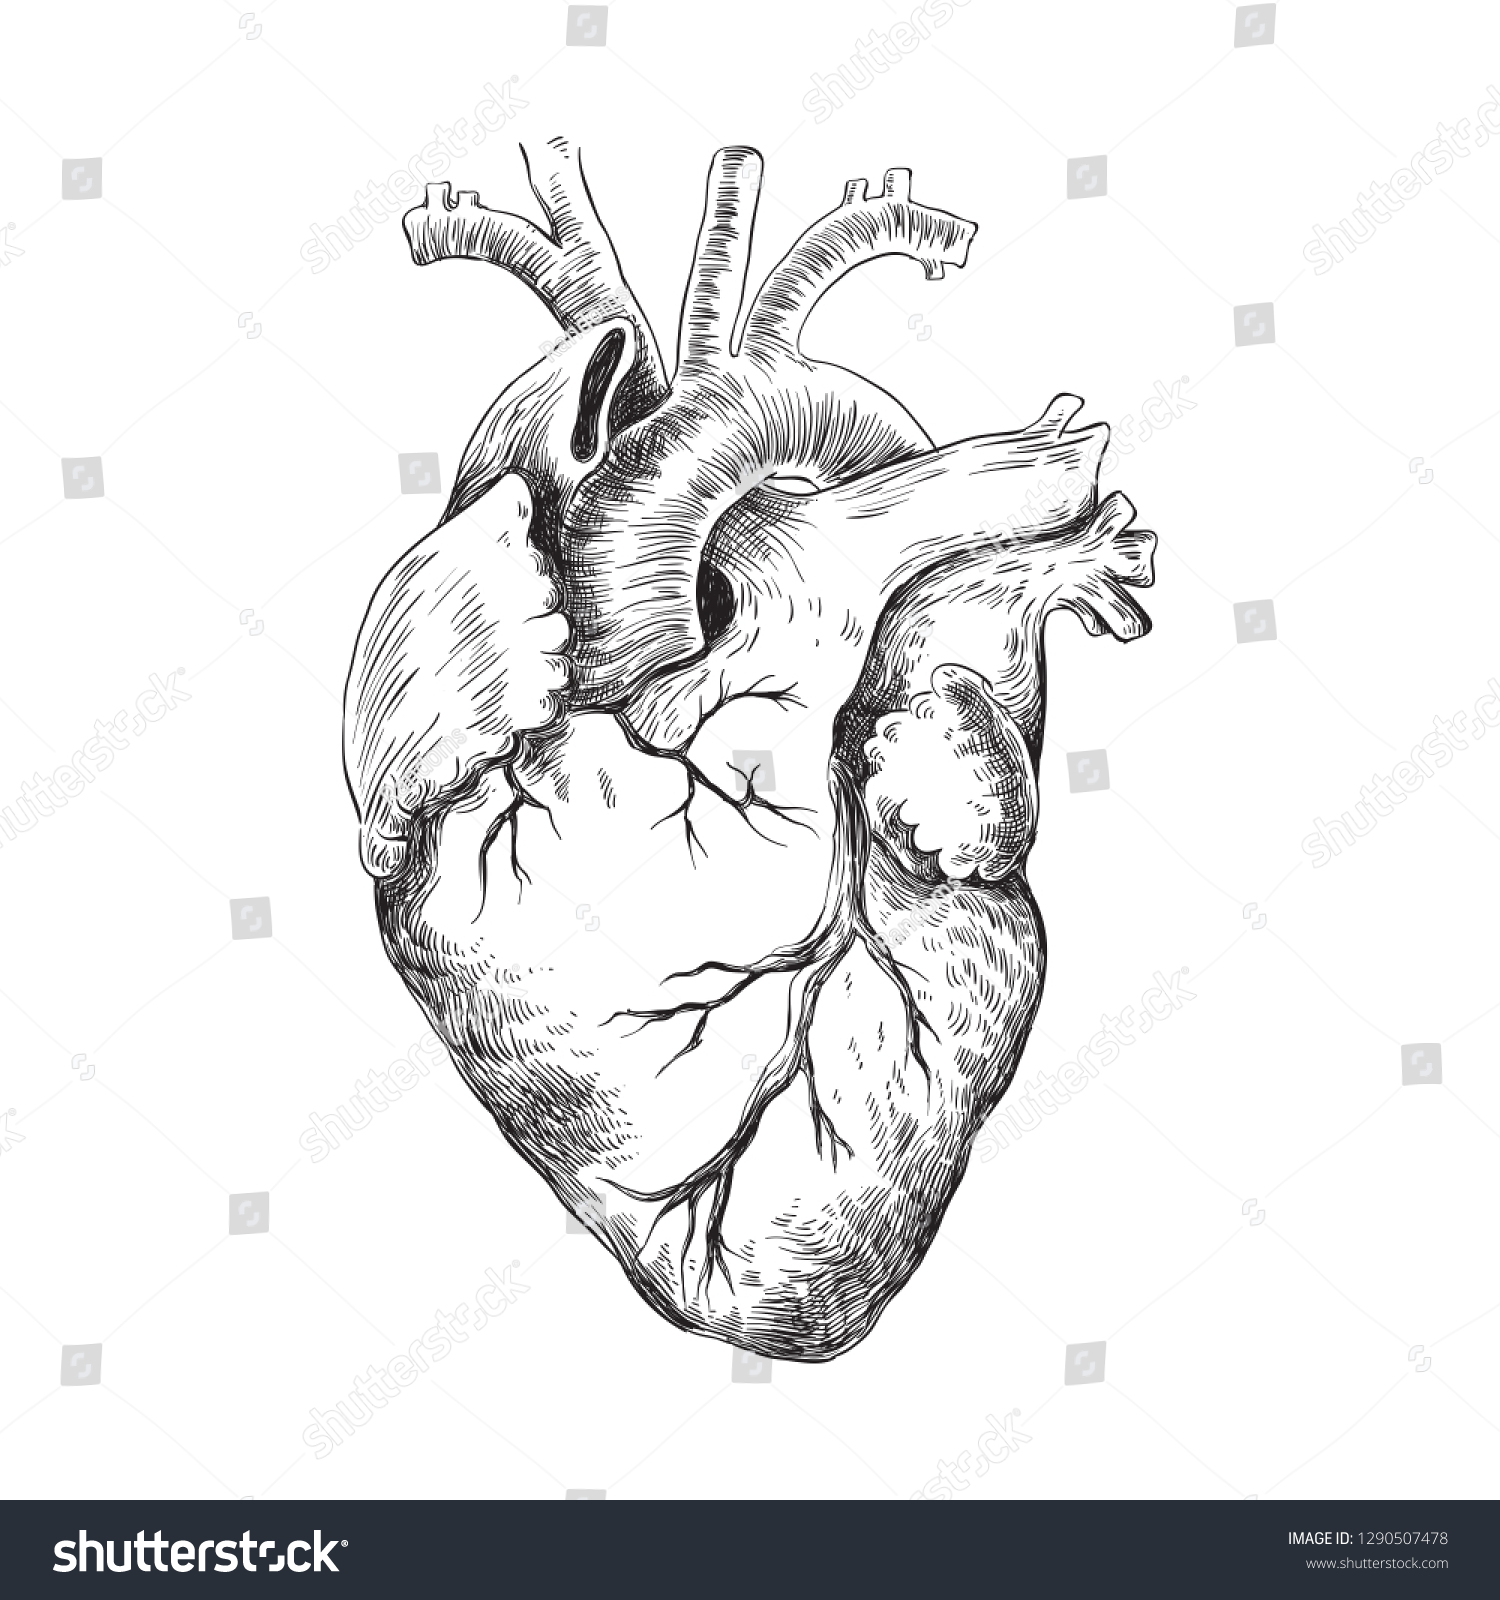 解剖学的な心臓の白黒イラスト のベクター画像素材 ロイヤリティフリー